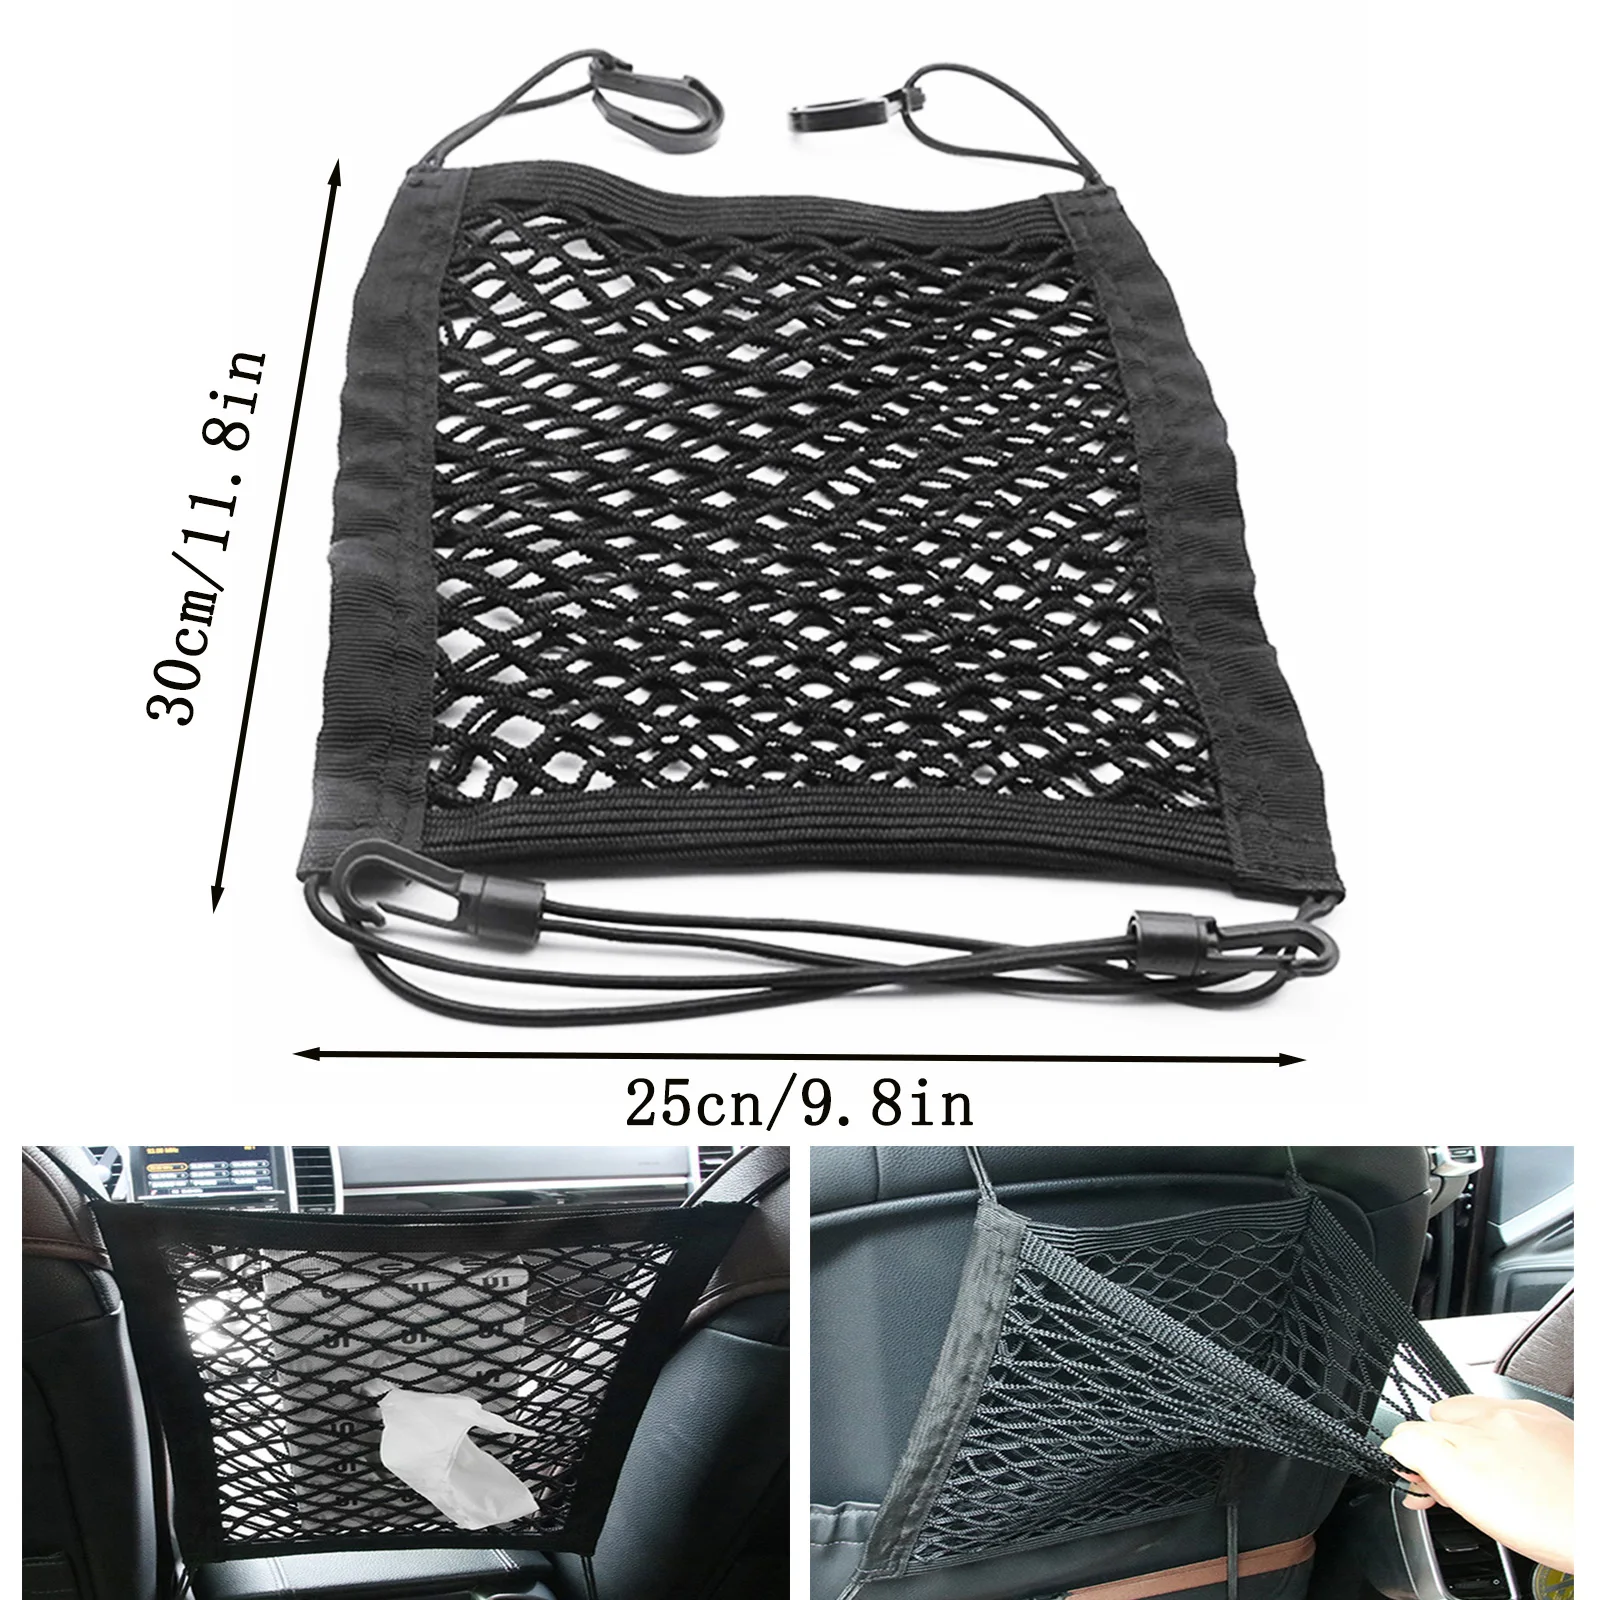 

Сетка для хранения в заднем багажнике автомобиля, эластичная сетка на сиденье, Сетчатая Сумка для хранения, внутреннее хранение, сетевые пр...